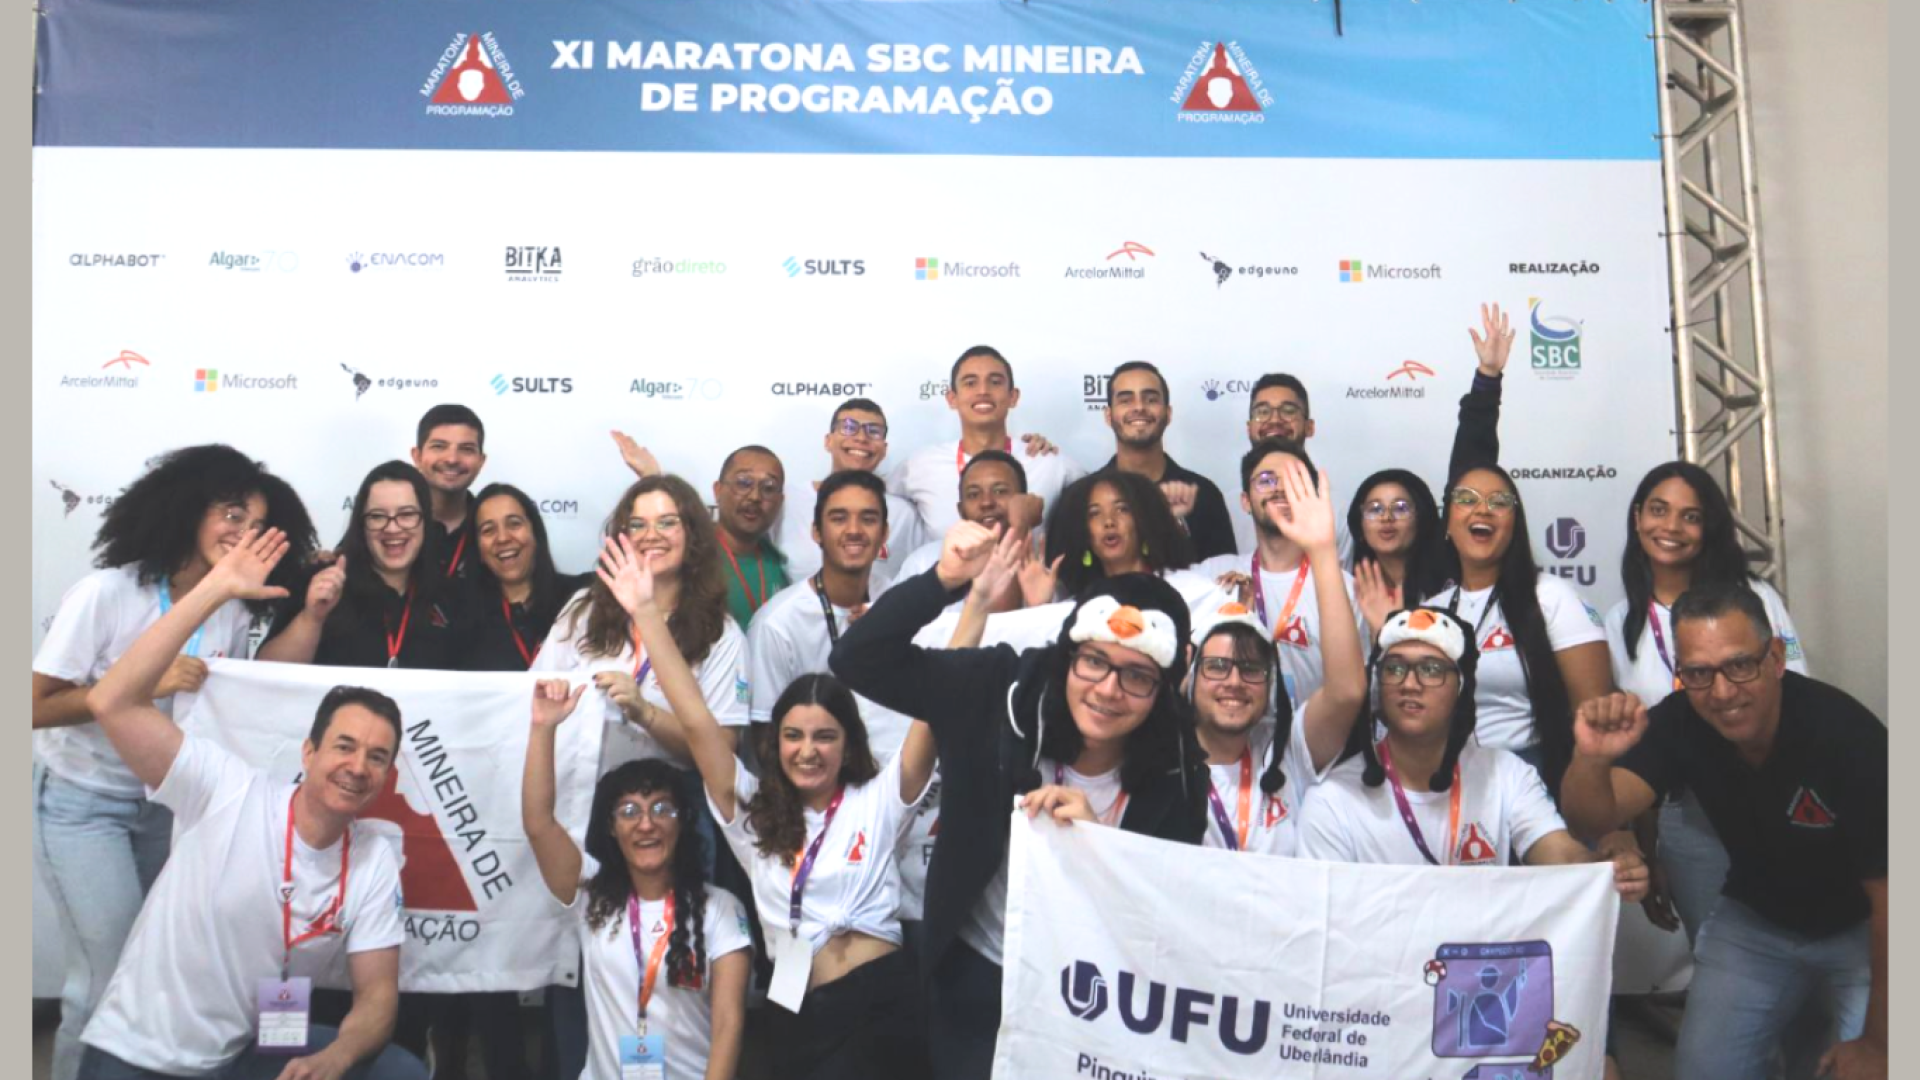 Foto dos estudantes de Computação da UFU, em frente ao banner da Maratona Mineira de Programação